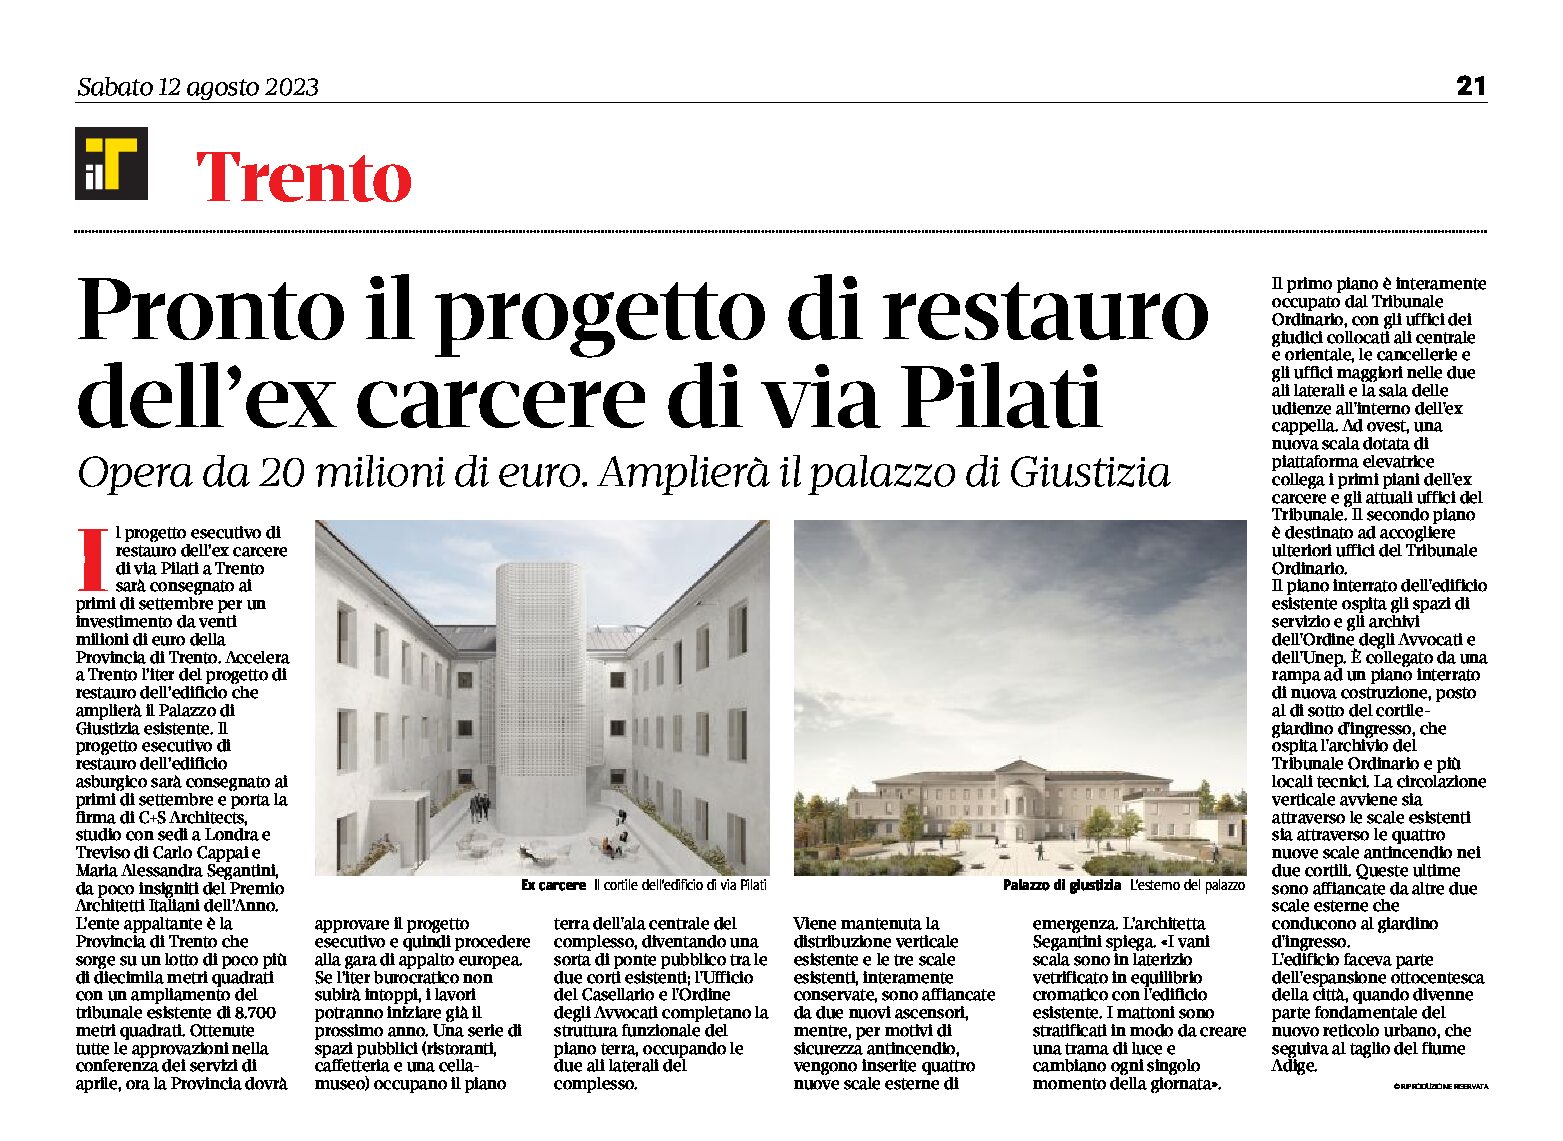 Trento, ex carcere di via Pilati: pronto il progetto di restauro del palazzo di Giustizia